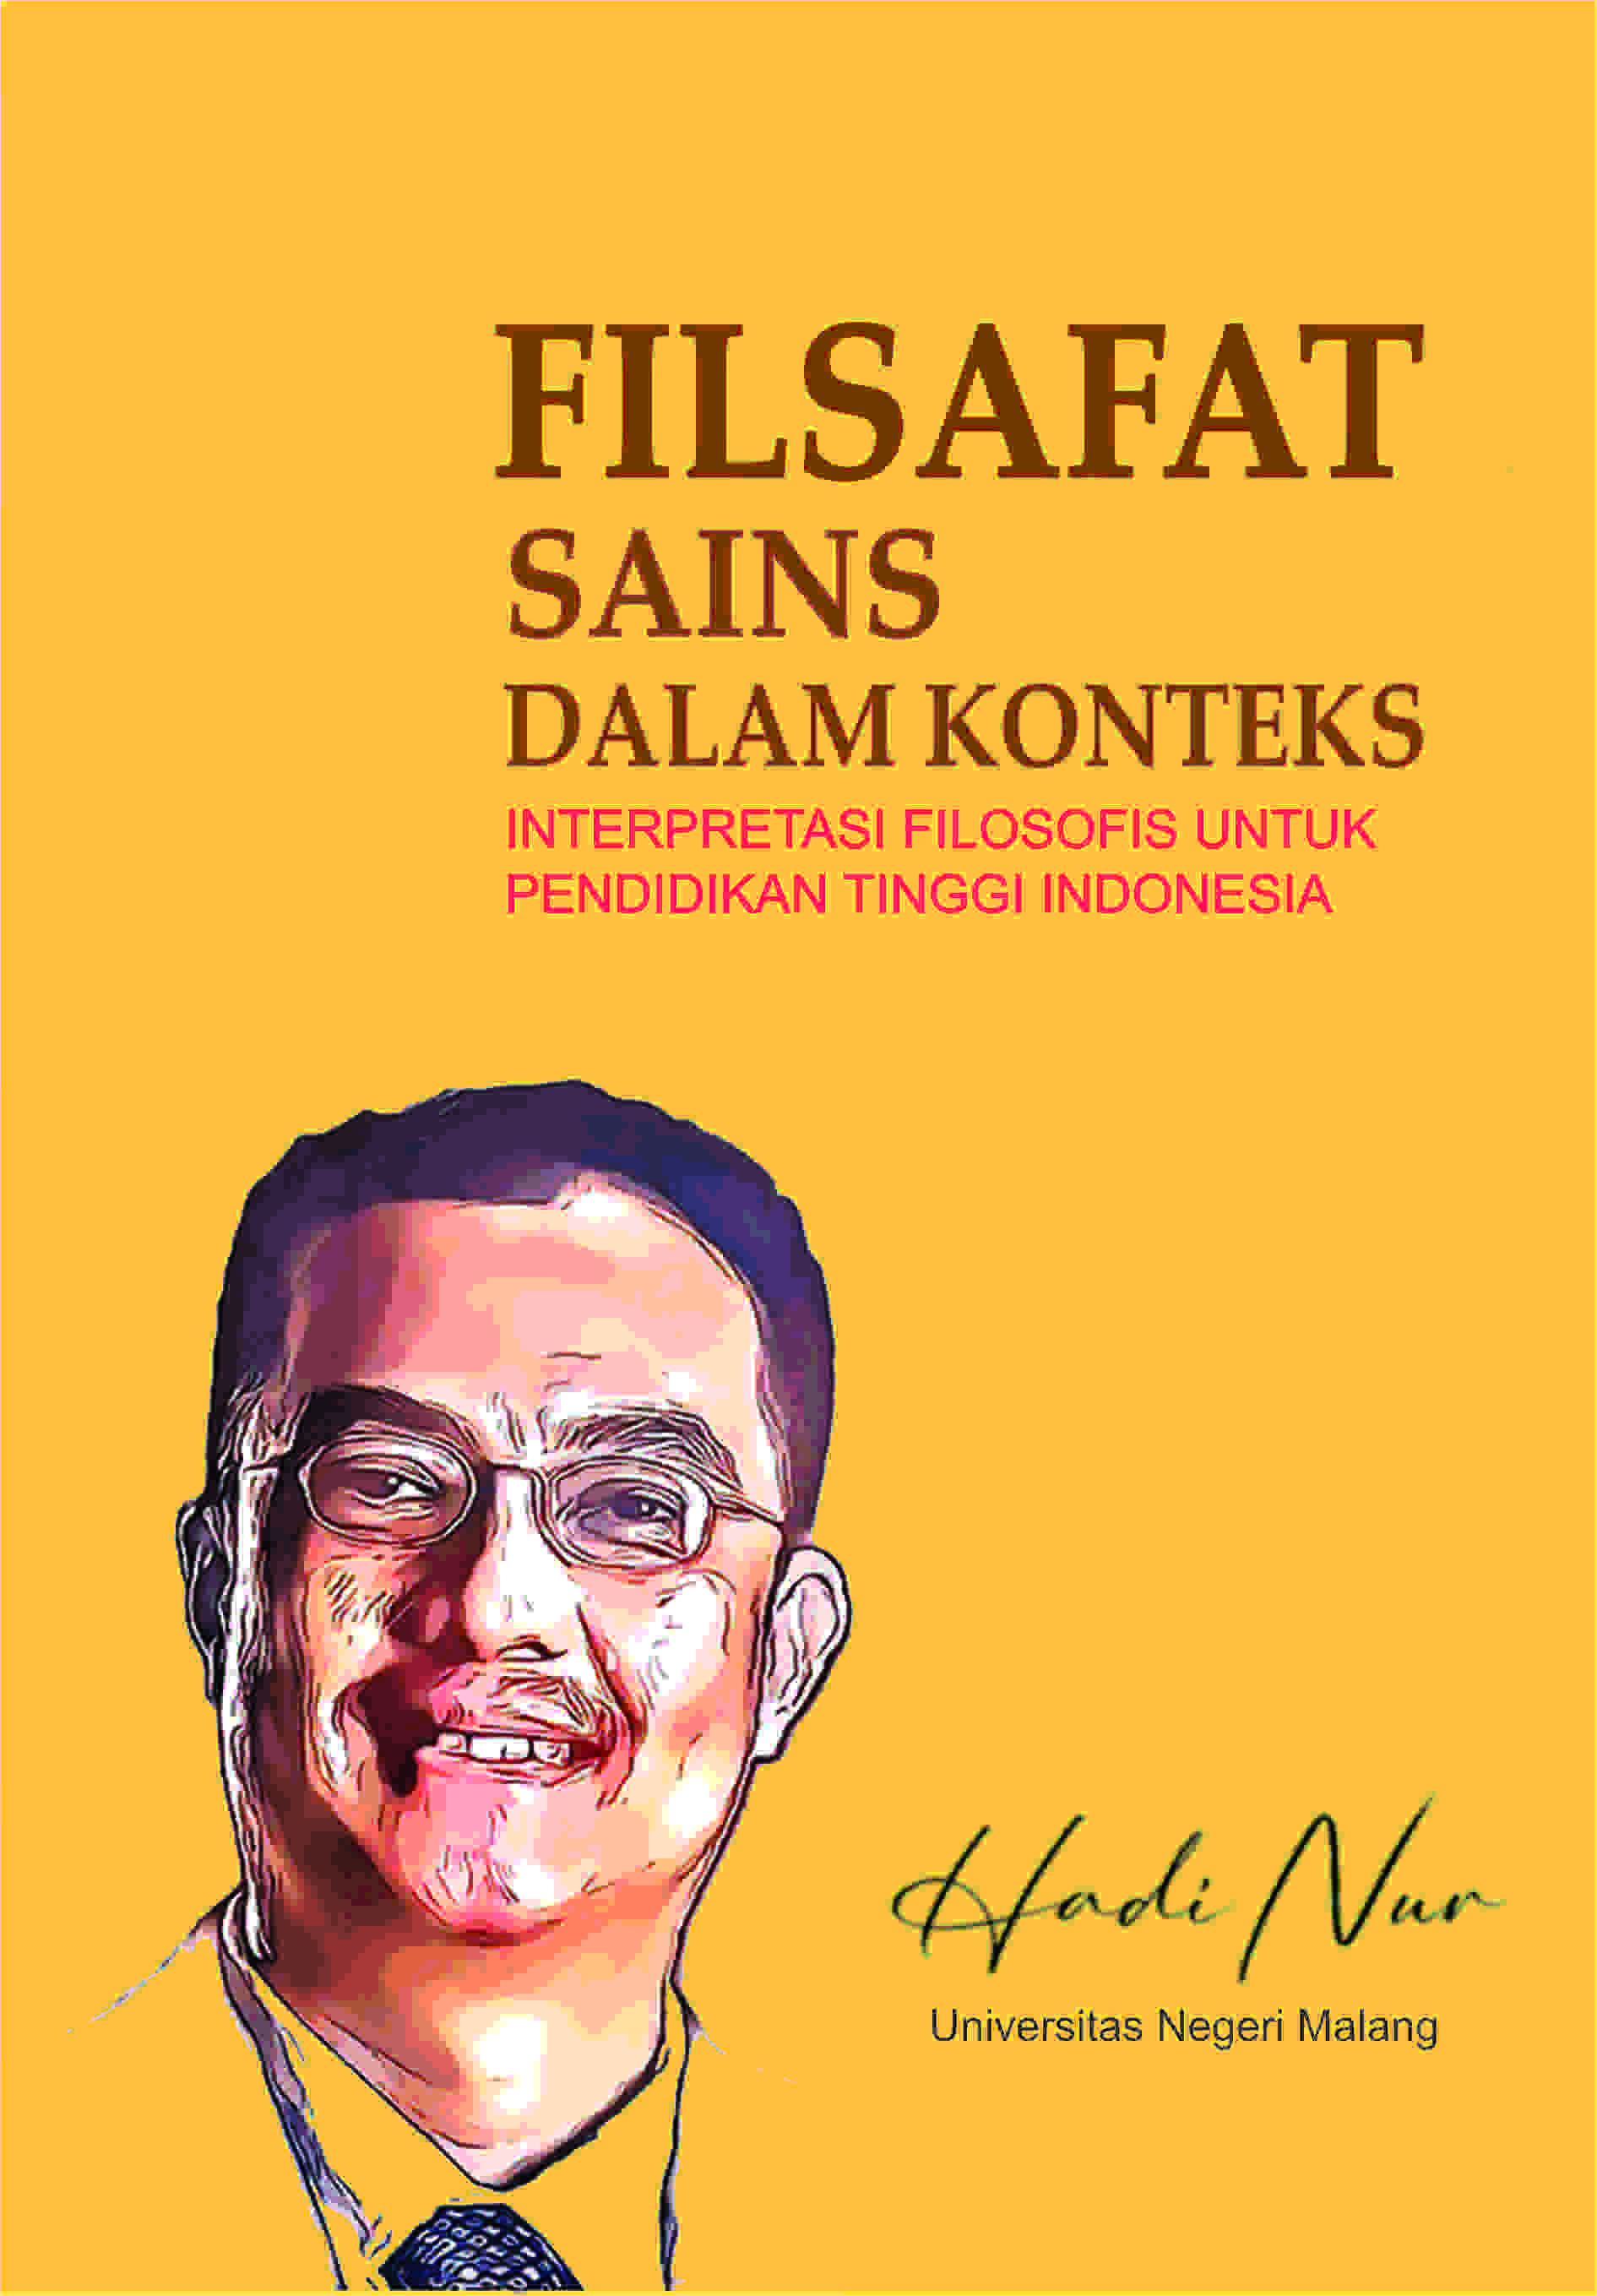 FILSAFAT SAINS DALAM KONTEKS: INTERPRETASI FILOSOFIS UNTUK PENDIDIKAN TINGGI INDONESIA